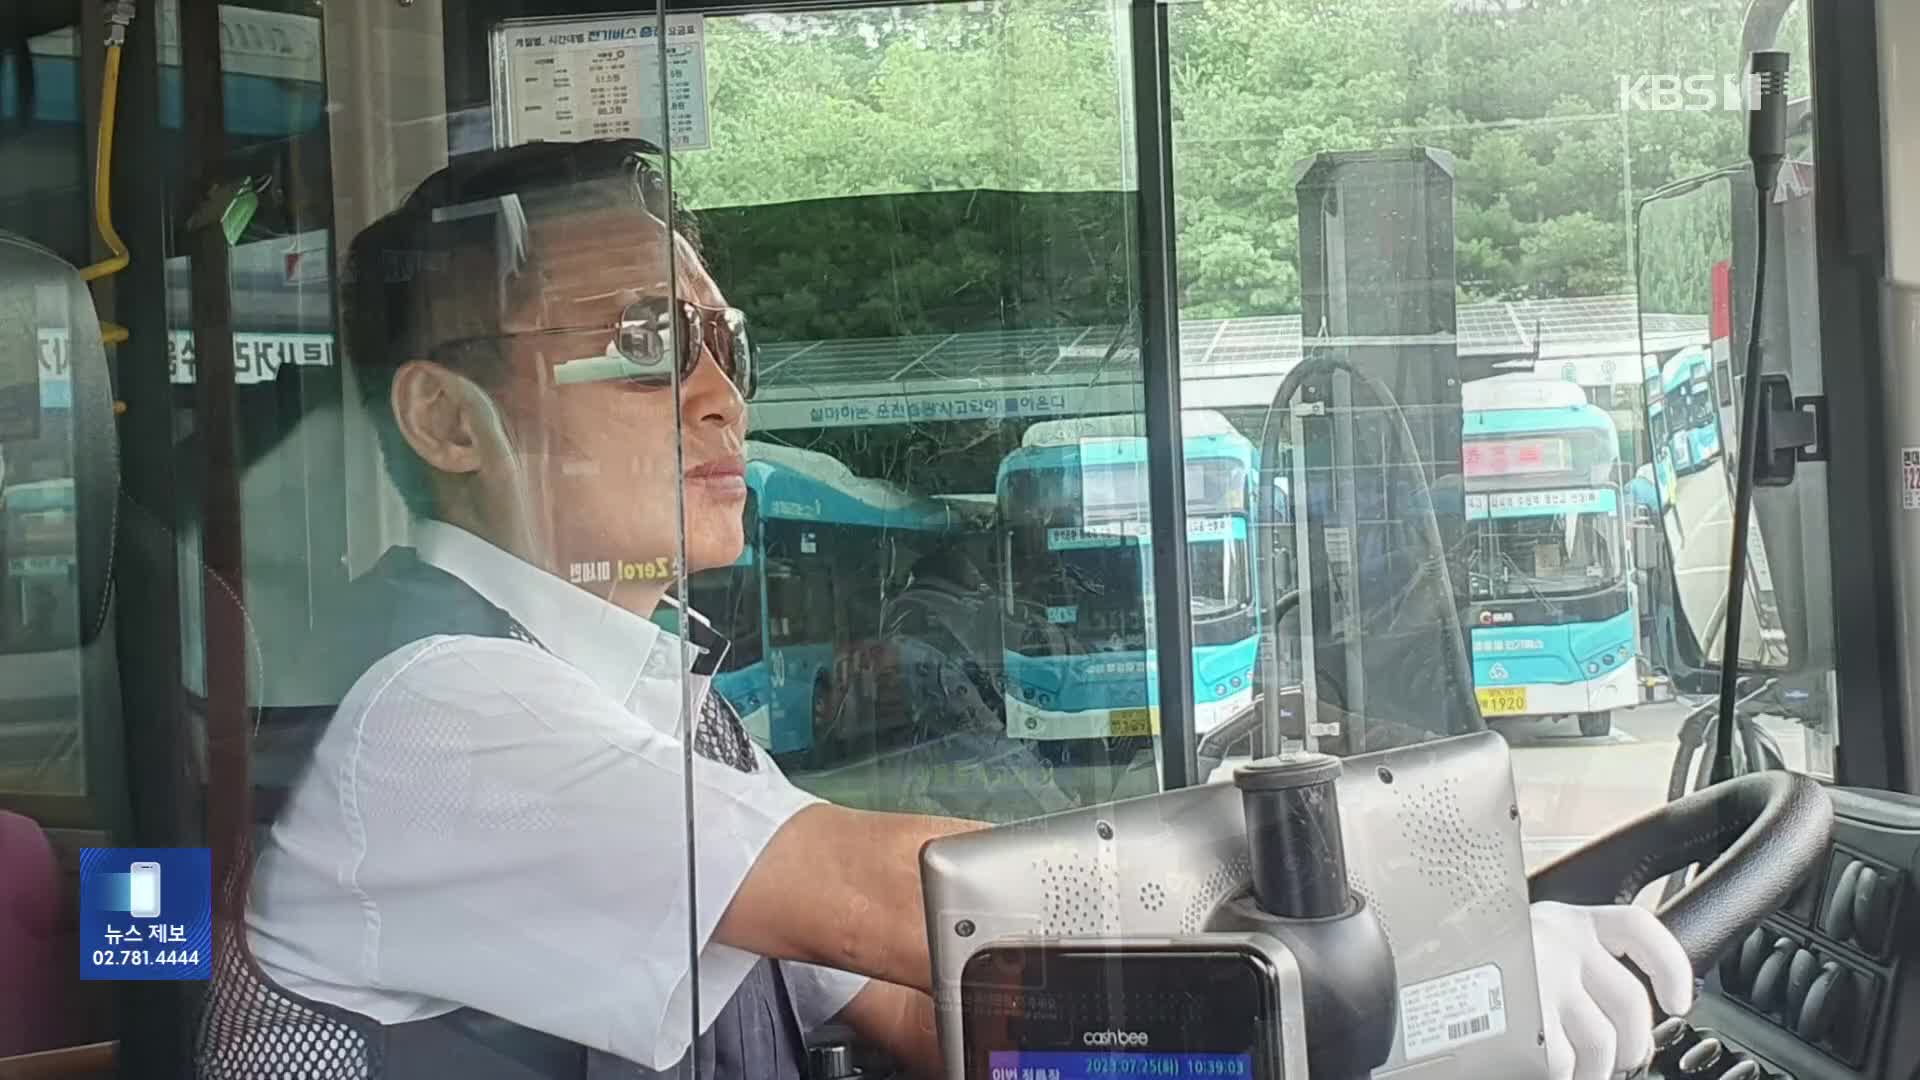 [잇슈 키워드] “일본에는 없는데”…아기 엄마 울린 특별한 버스 안내 방송